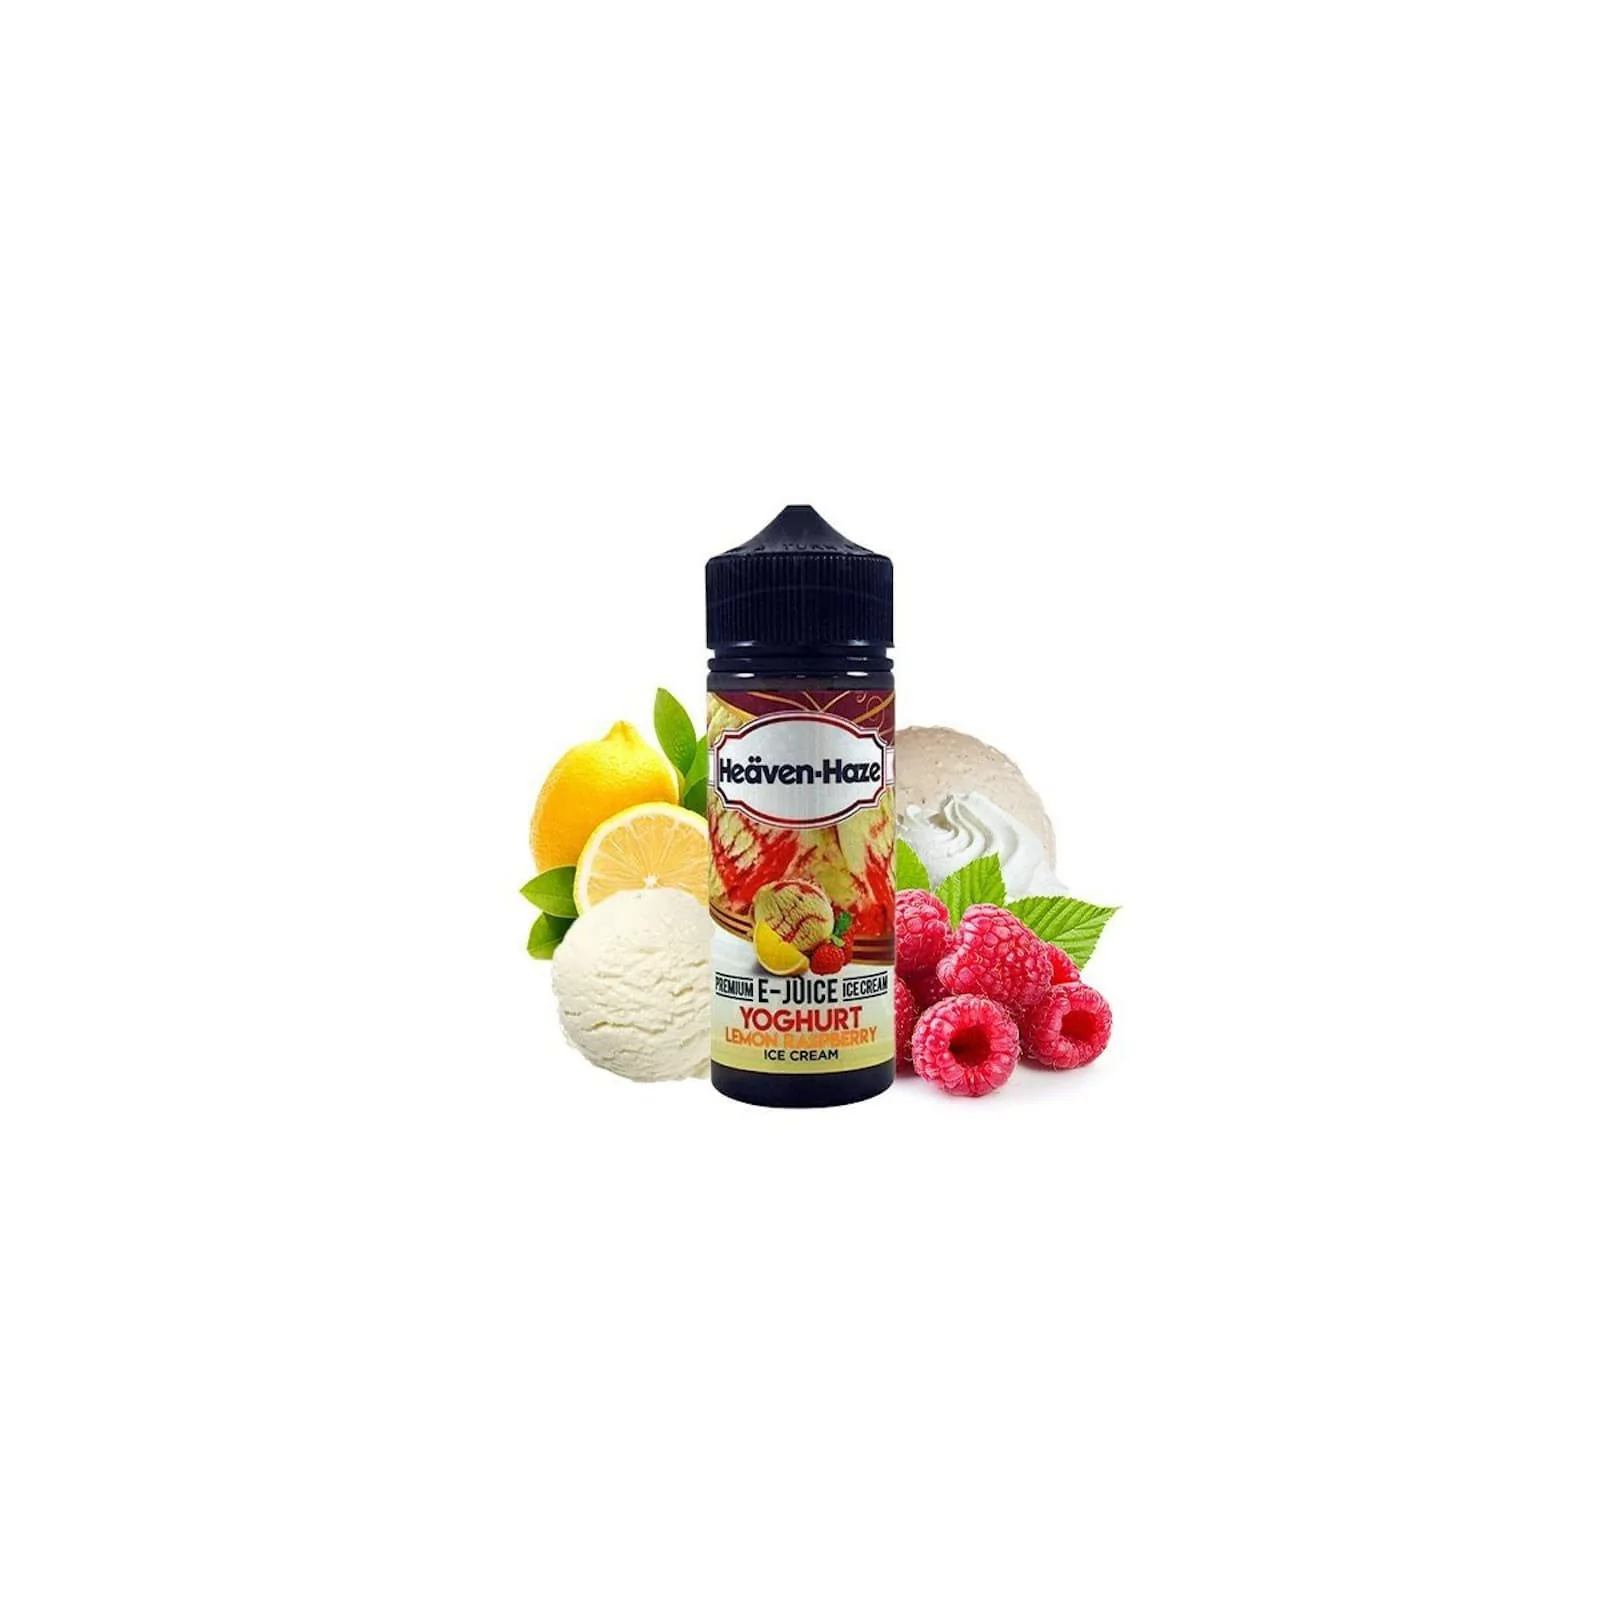 Yoghurt Lemon Raspberry 100ml - Heäven-Haze